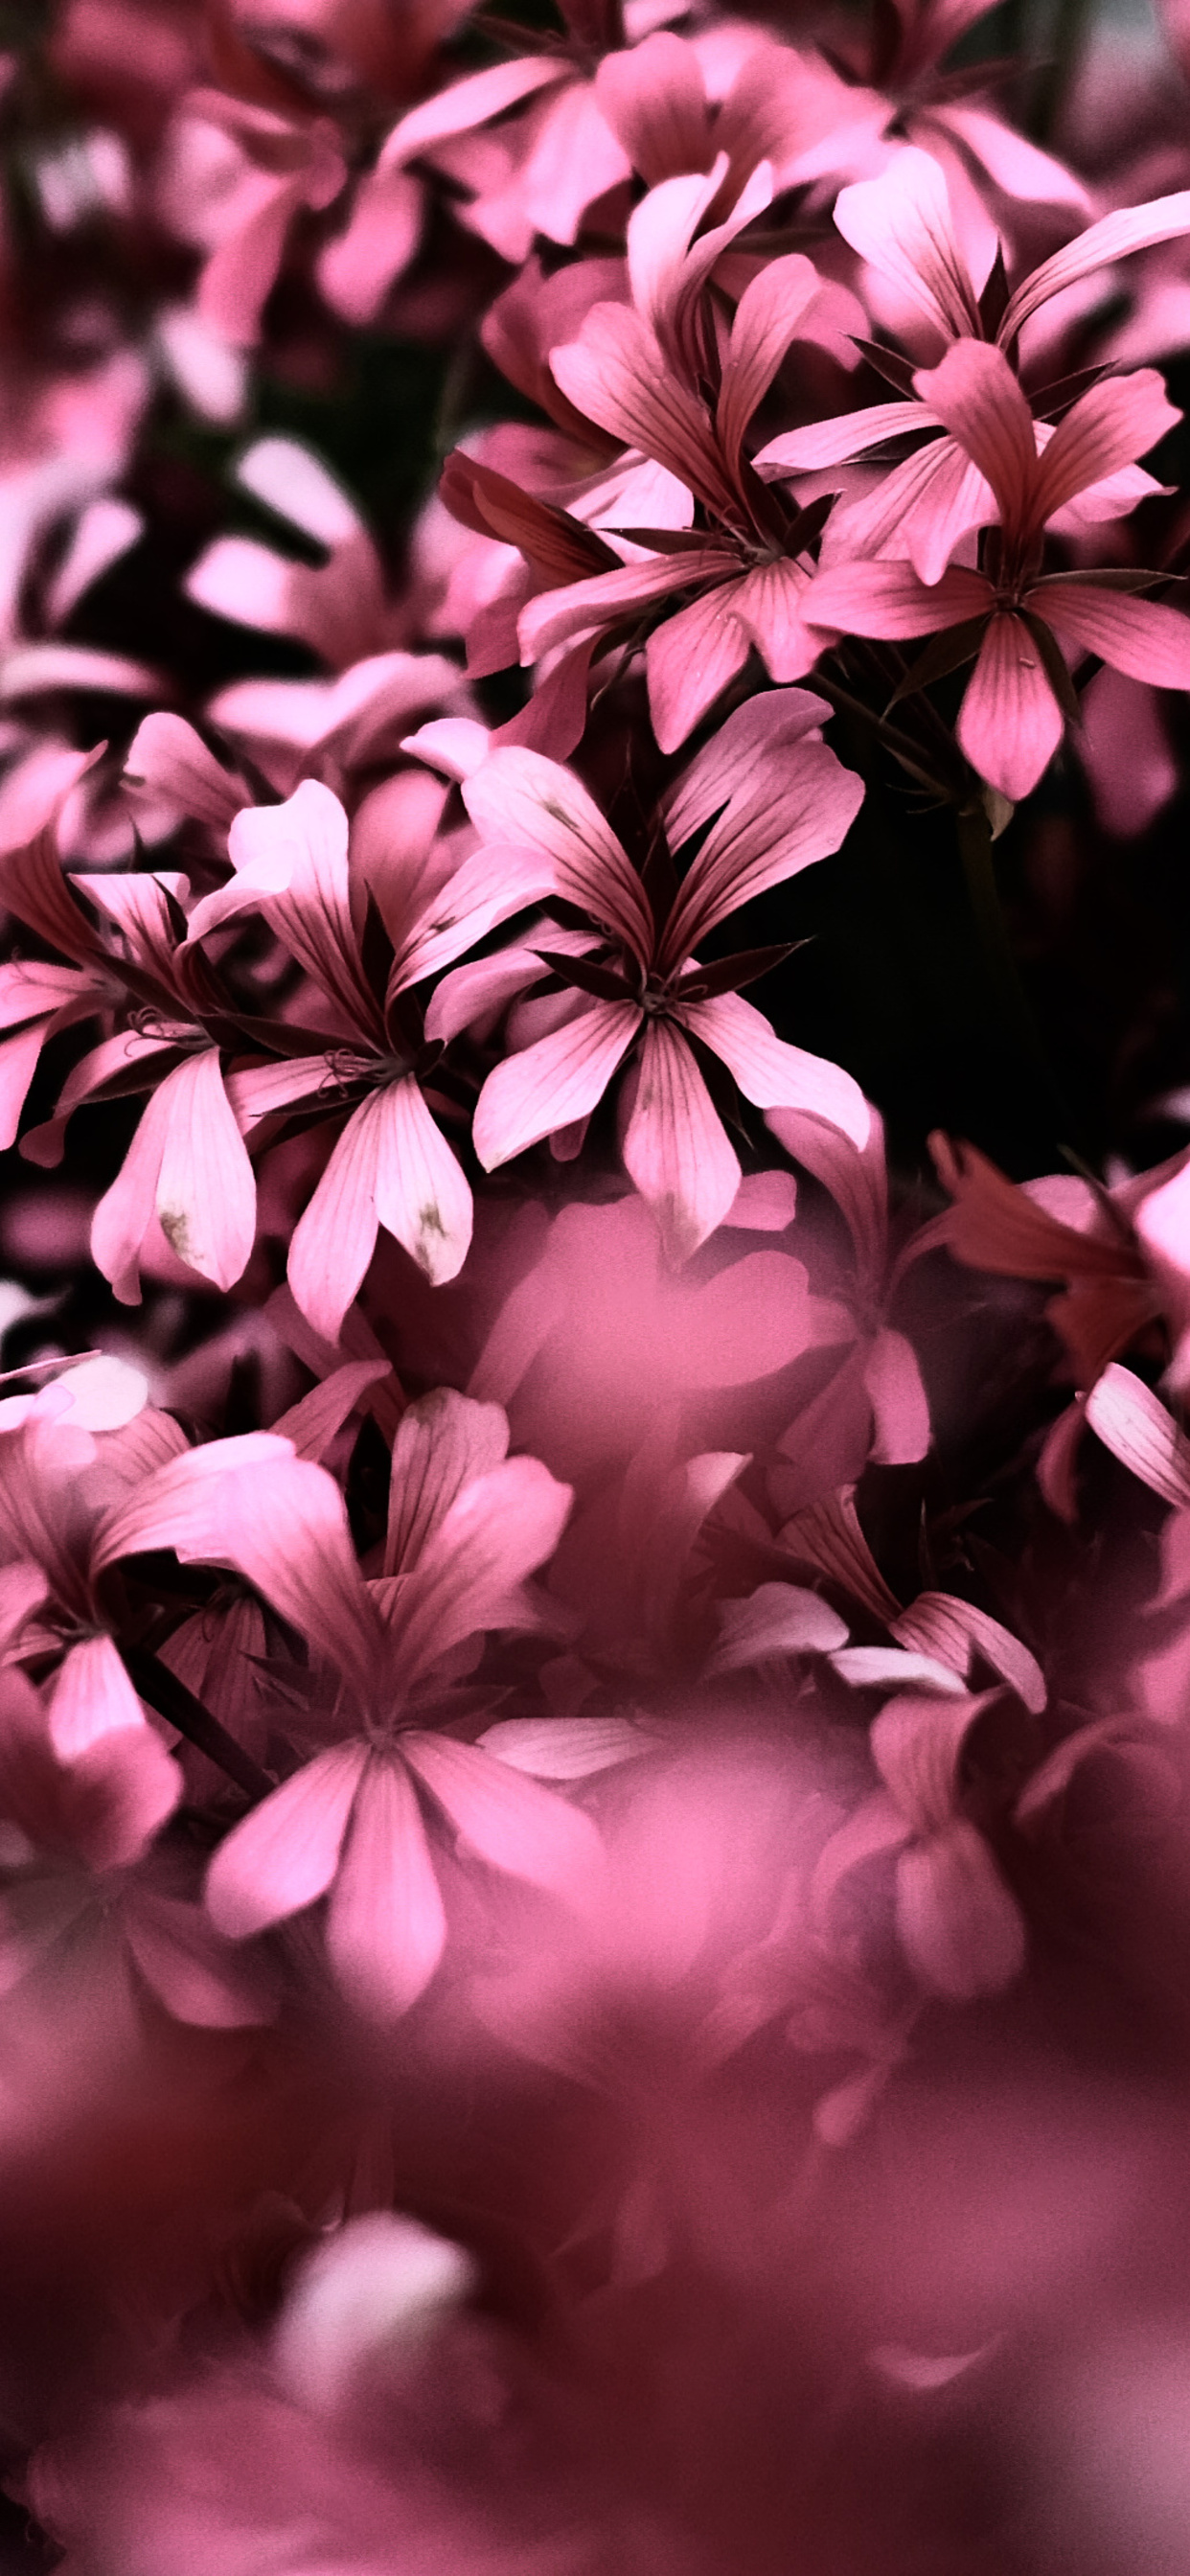 Hoa hồng màu hồng 4K cho iPhone là sự lựa chọn hoàn hảo để làm nổi bật chiếc iPhone của bạn. Với sự kết hợp tuyệt vời giữa màu sắc và hình ảnh hoa cỏ, chúng sẽ khiến cho màn hình của bạn trở nên sống động và tự nhiên hơn bao giờ hết. Hãy truy cập vào hình ảnh liên quan để trải nghiệm những thiết kế ấn tượng này.